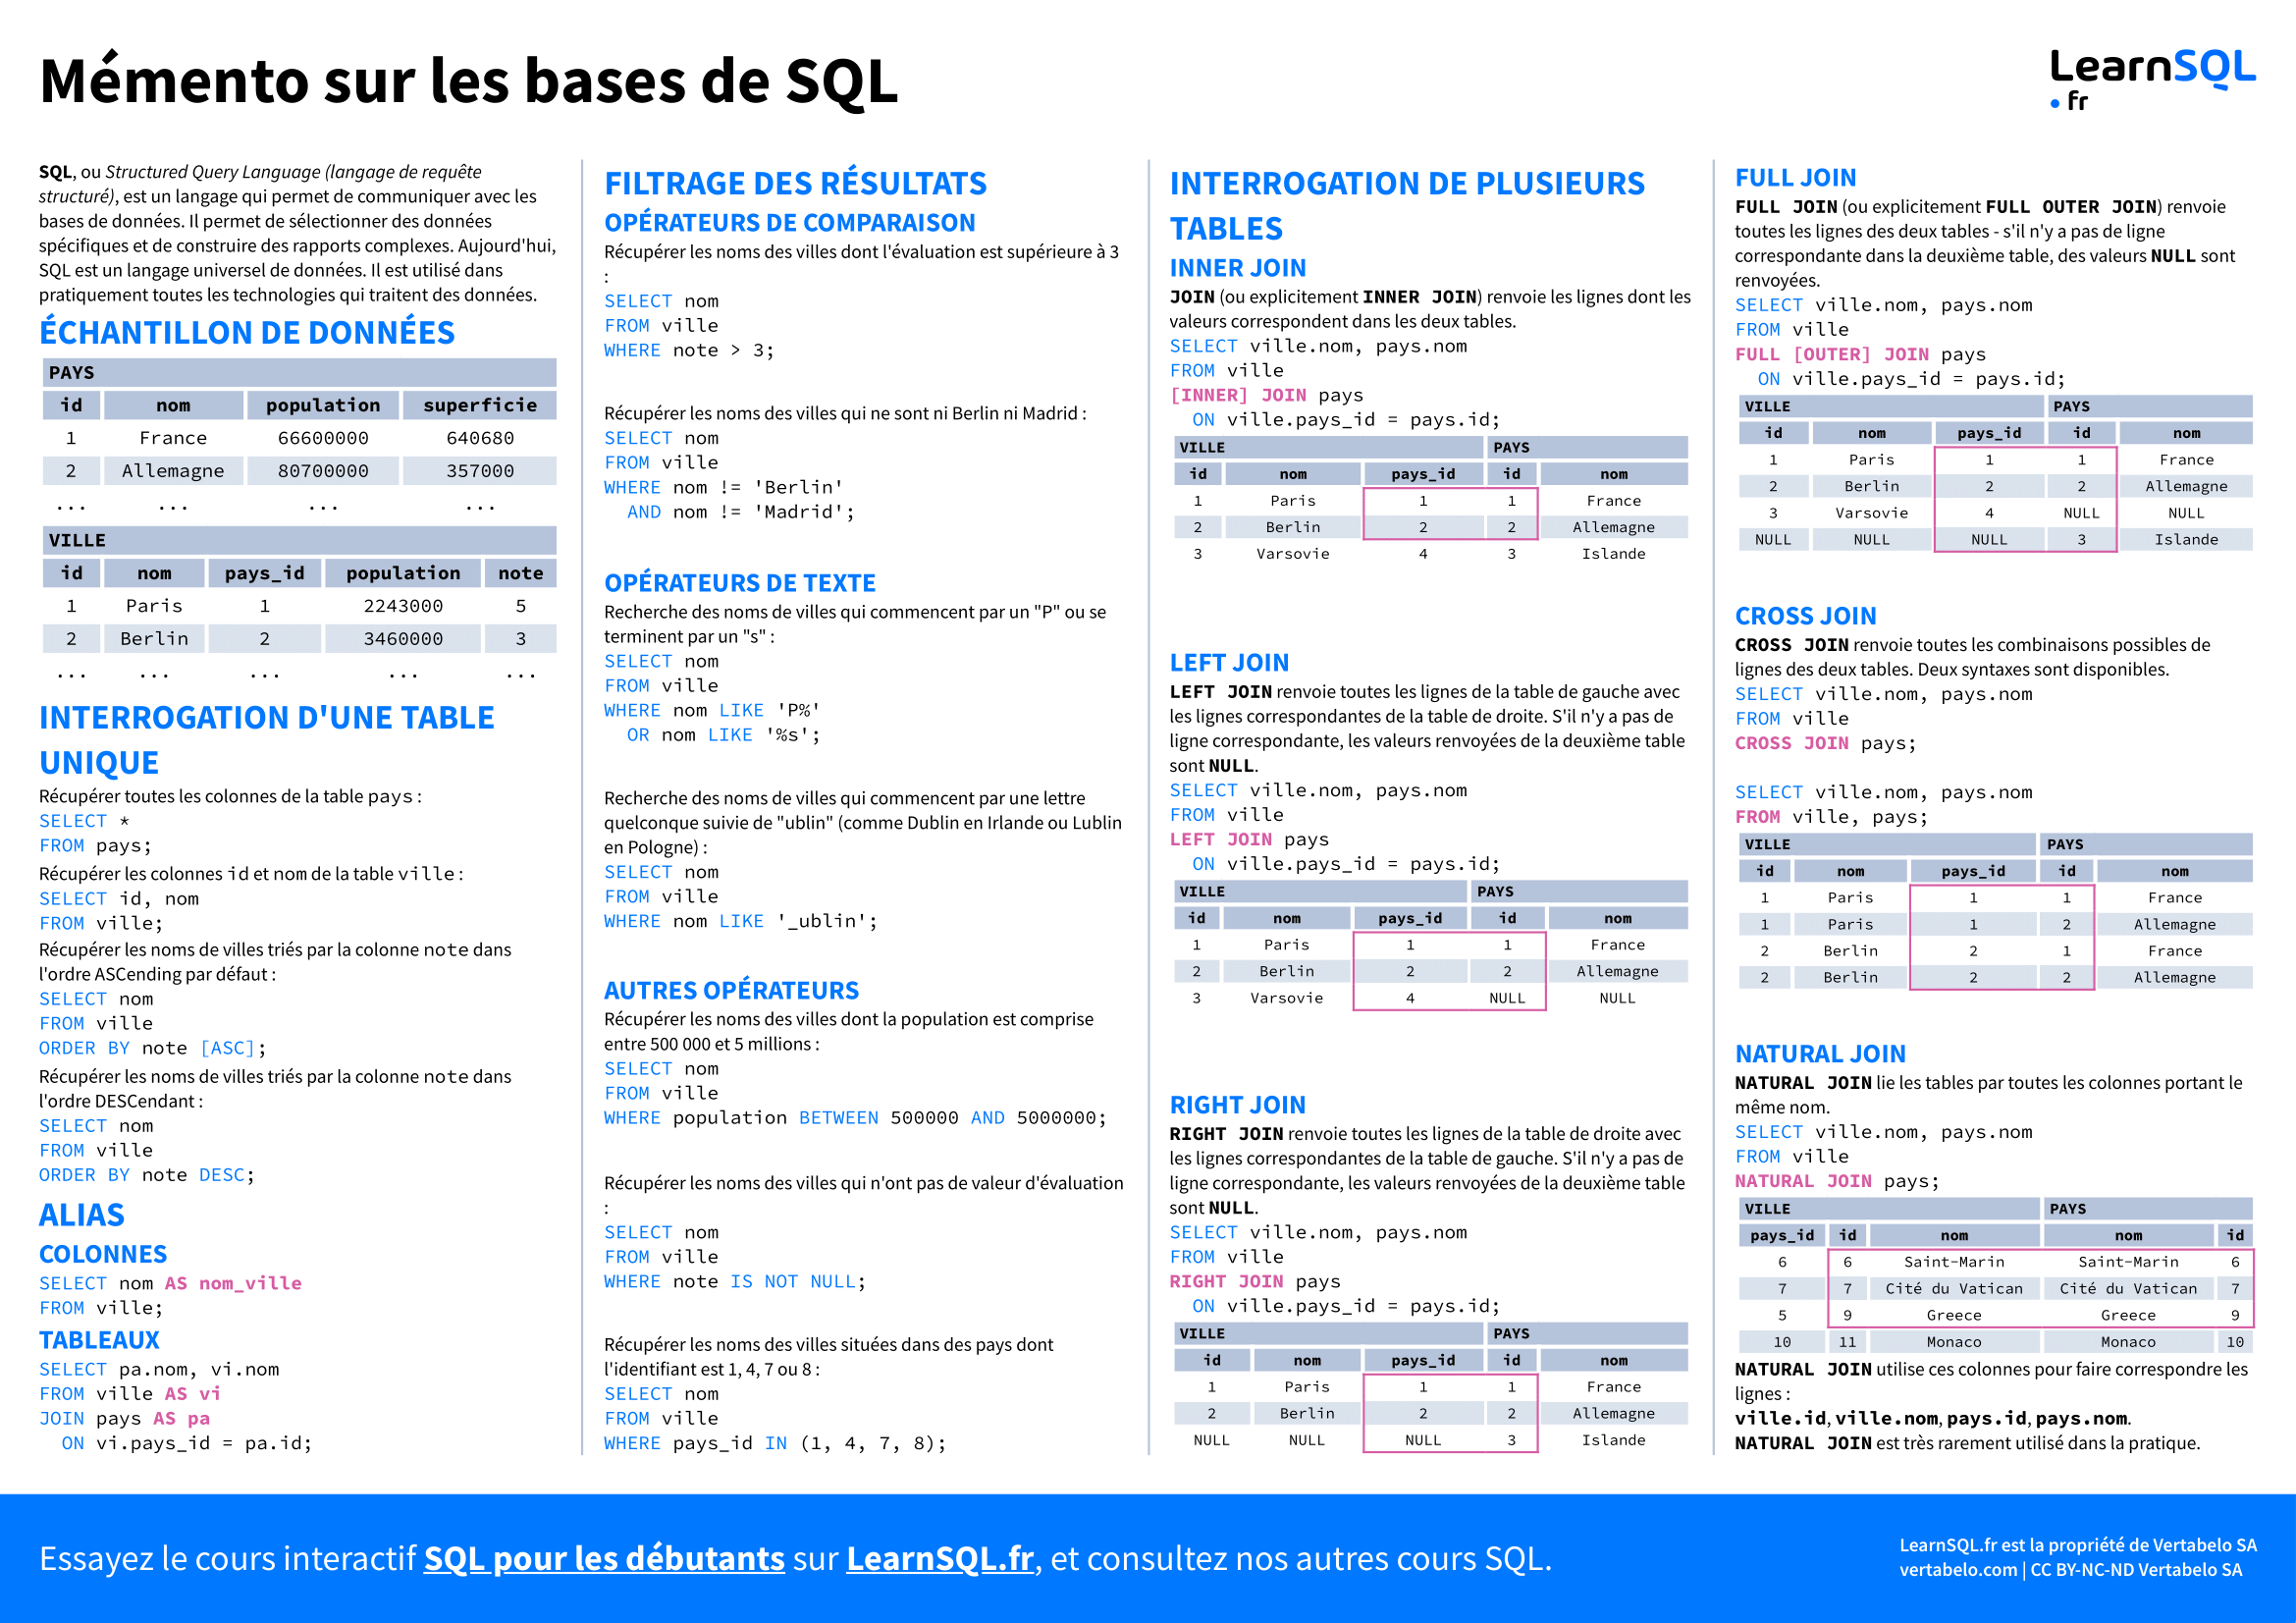 Première page du mémento sur les bases du SQL